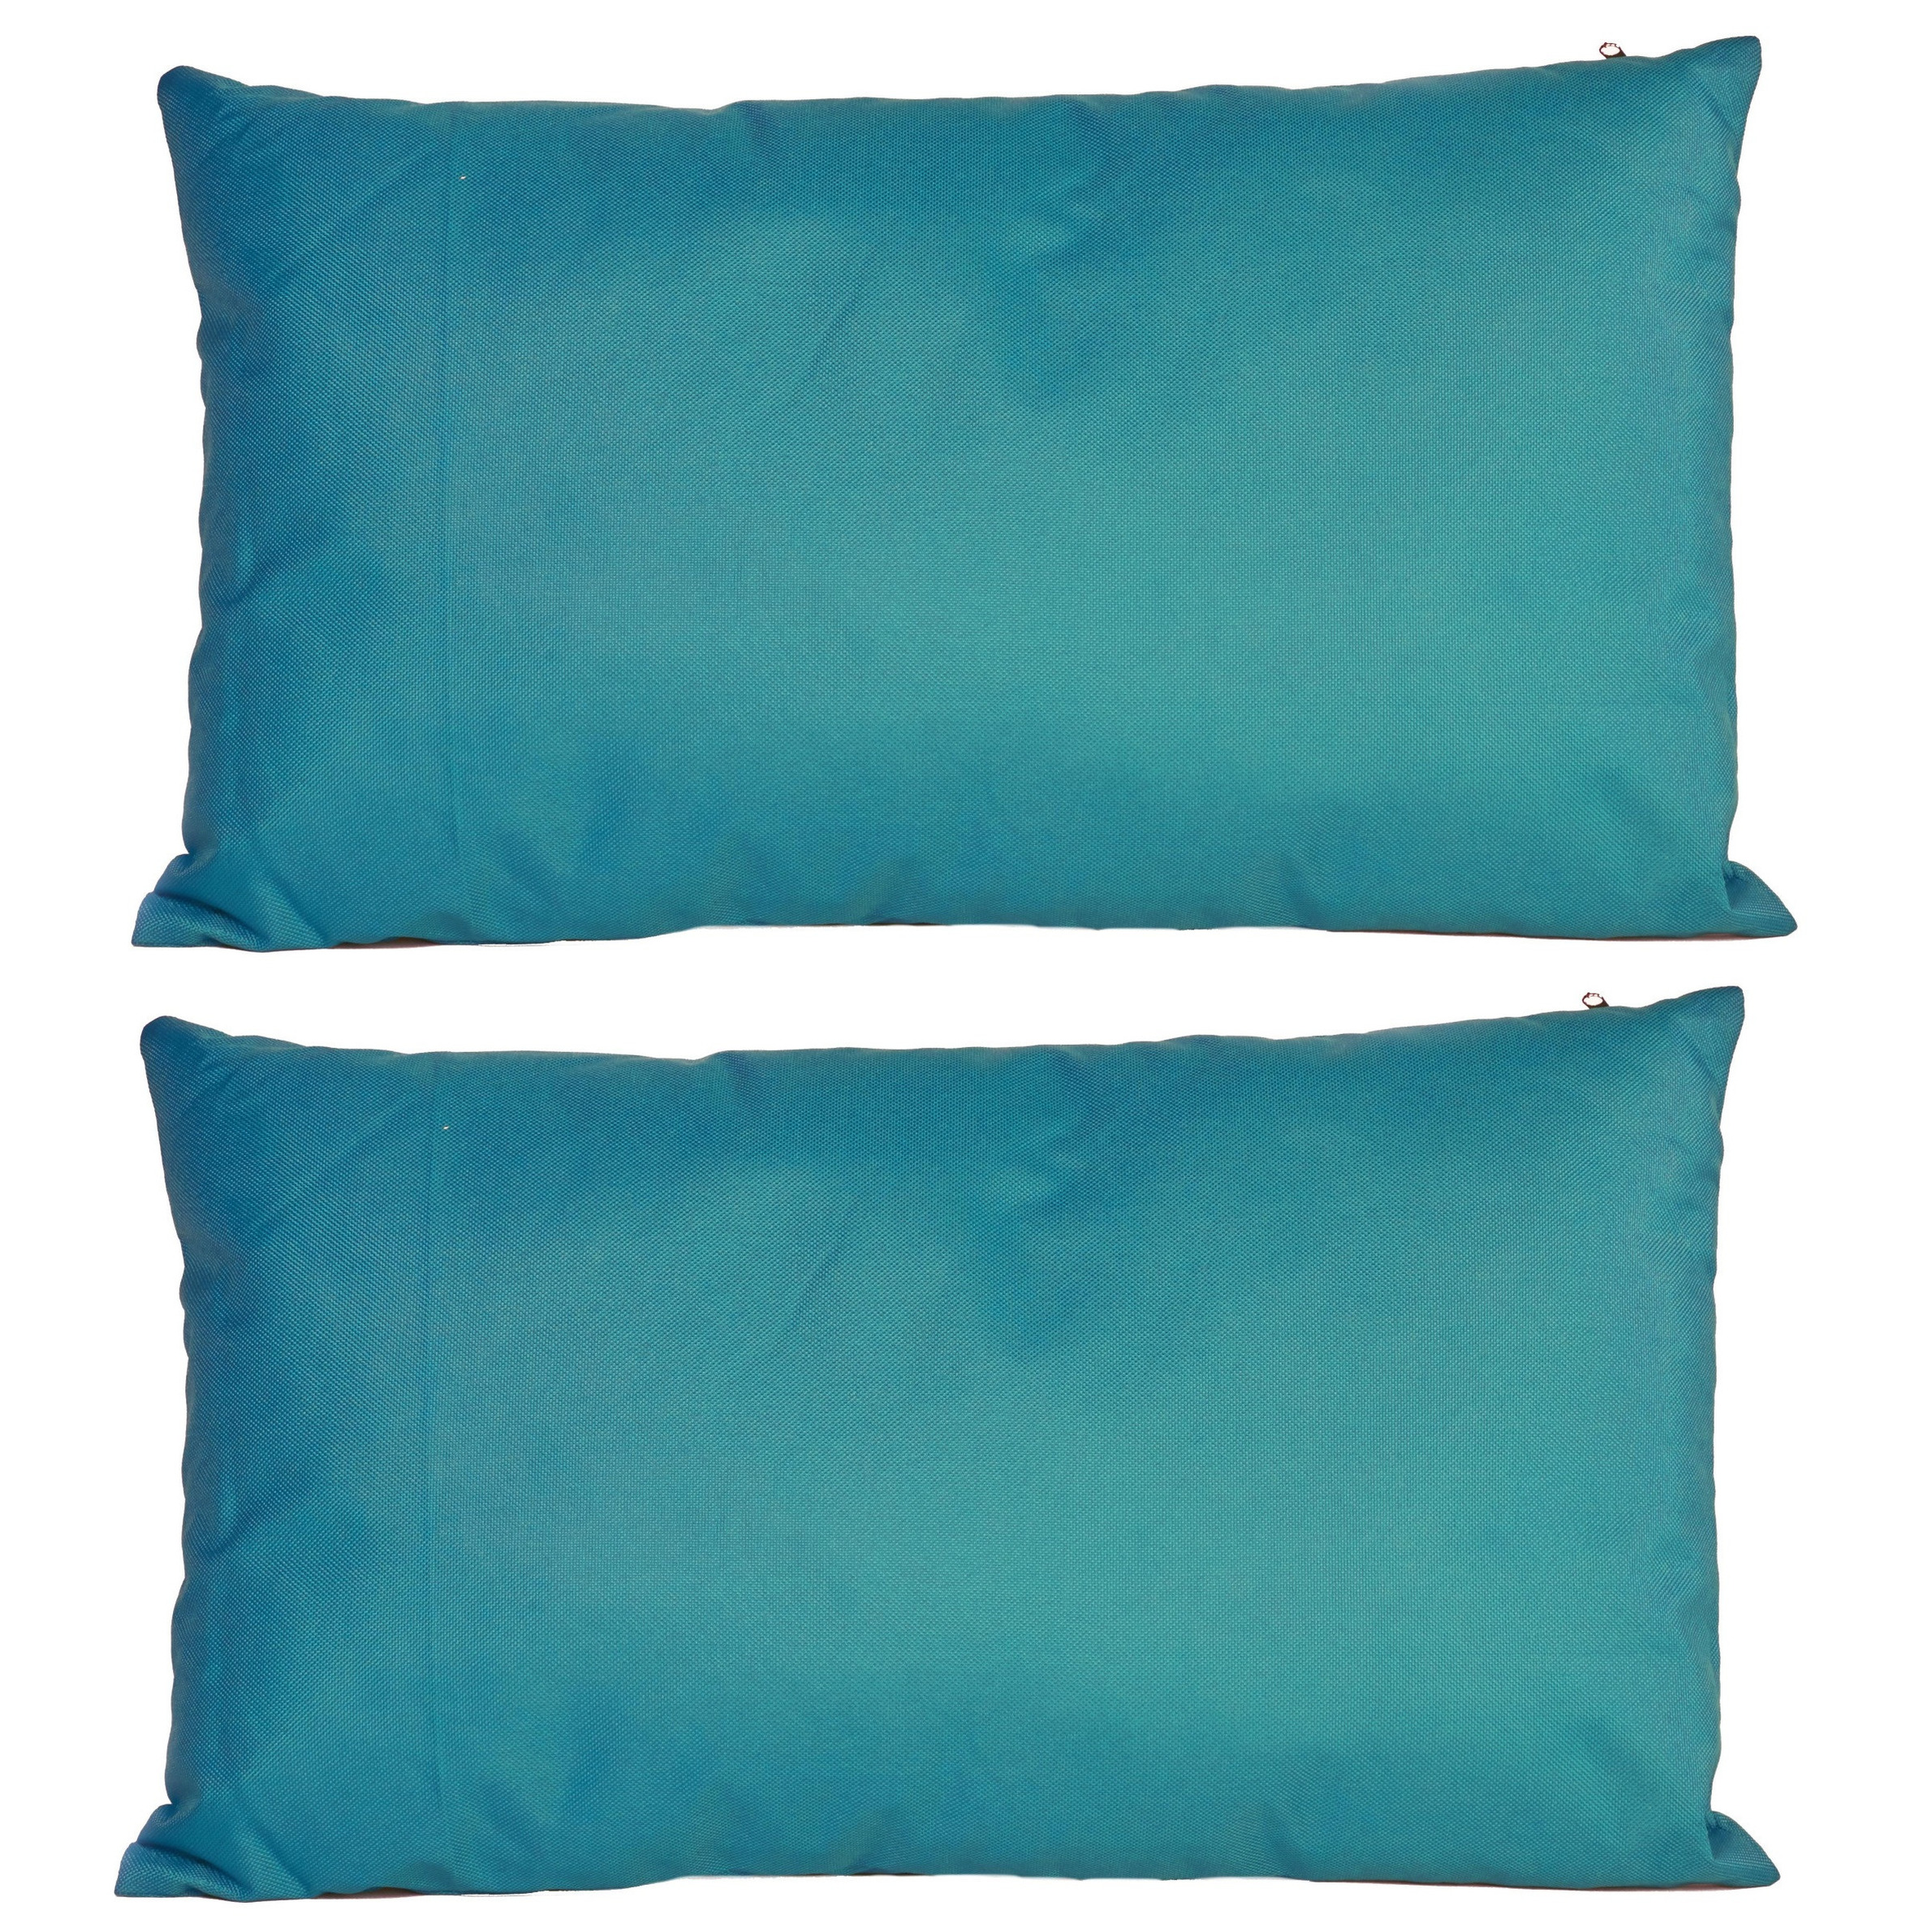 4x Bank-sier kussens voor binnen en buiten in de kleur petrol blauw 30 x 50 cm